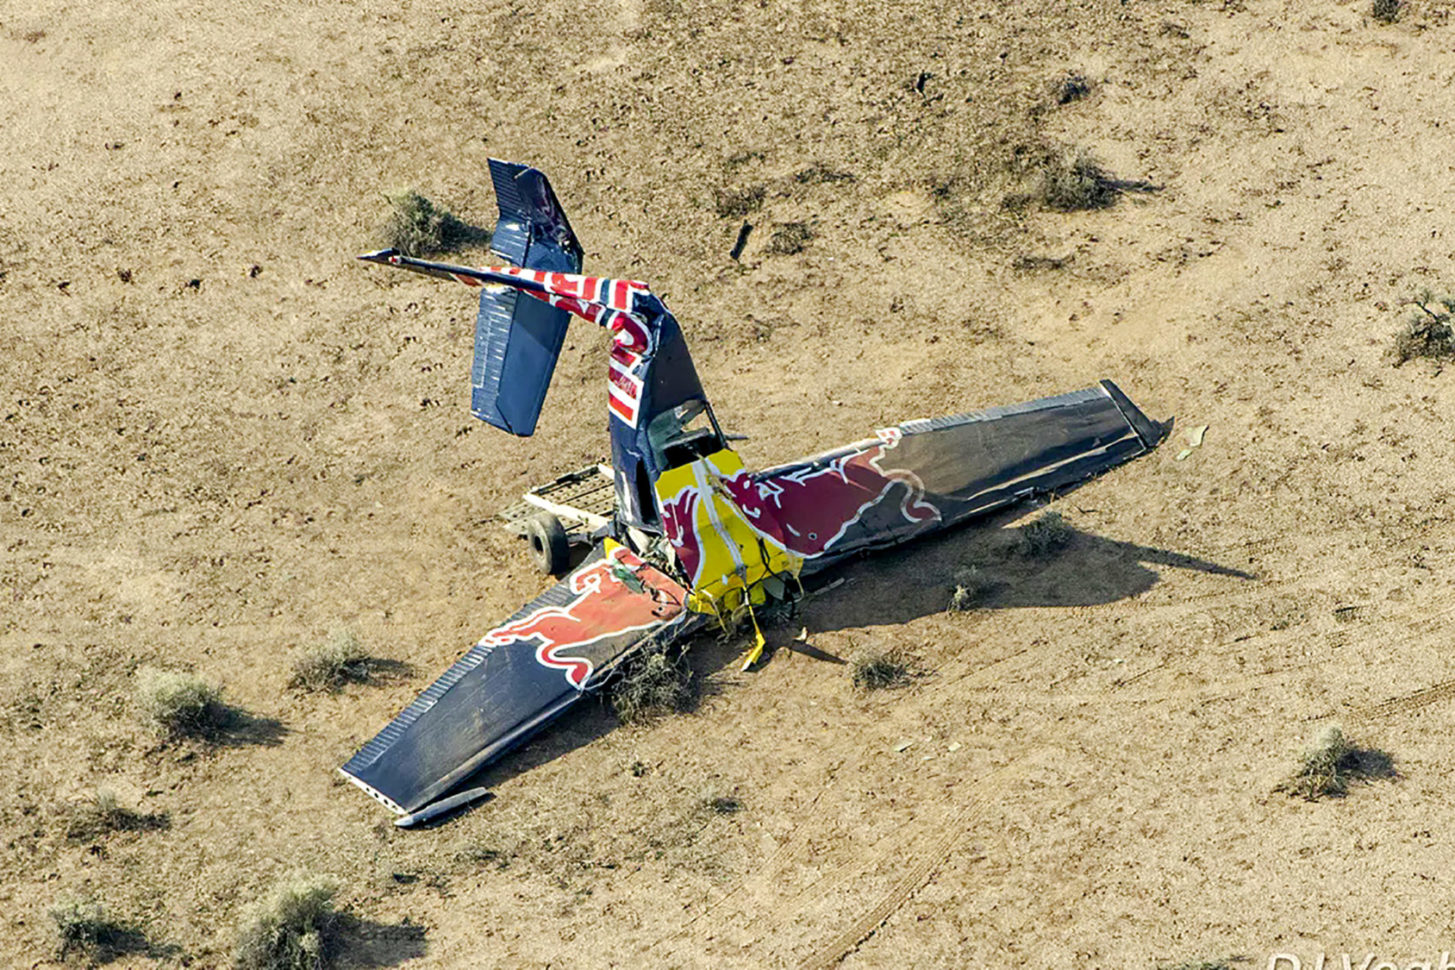 Red Bull: Flugzeugtausch-Spektakel in den USA geht schief